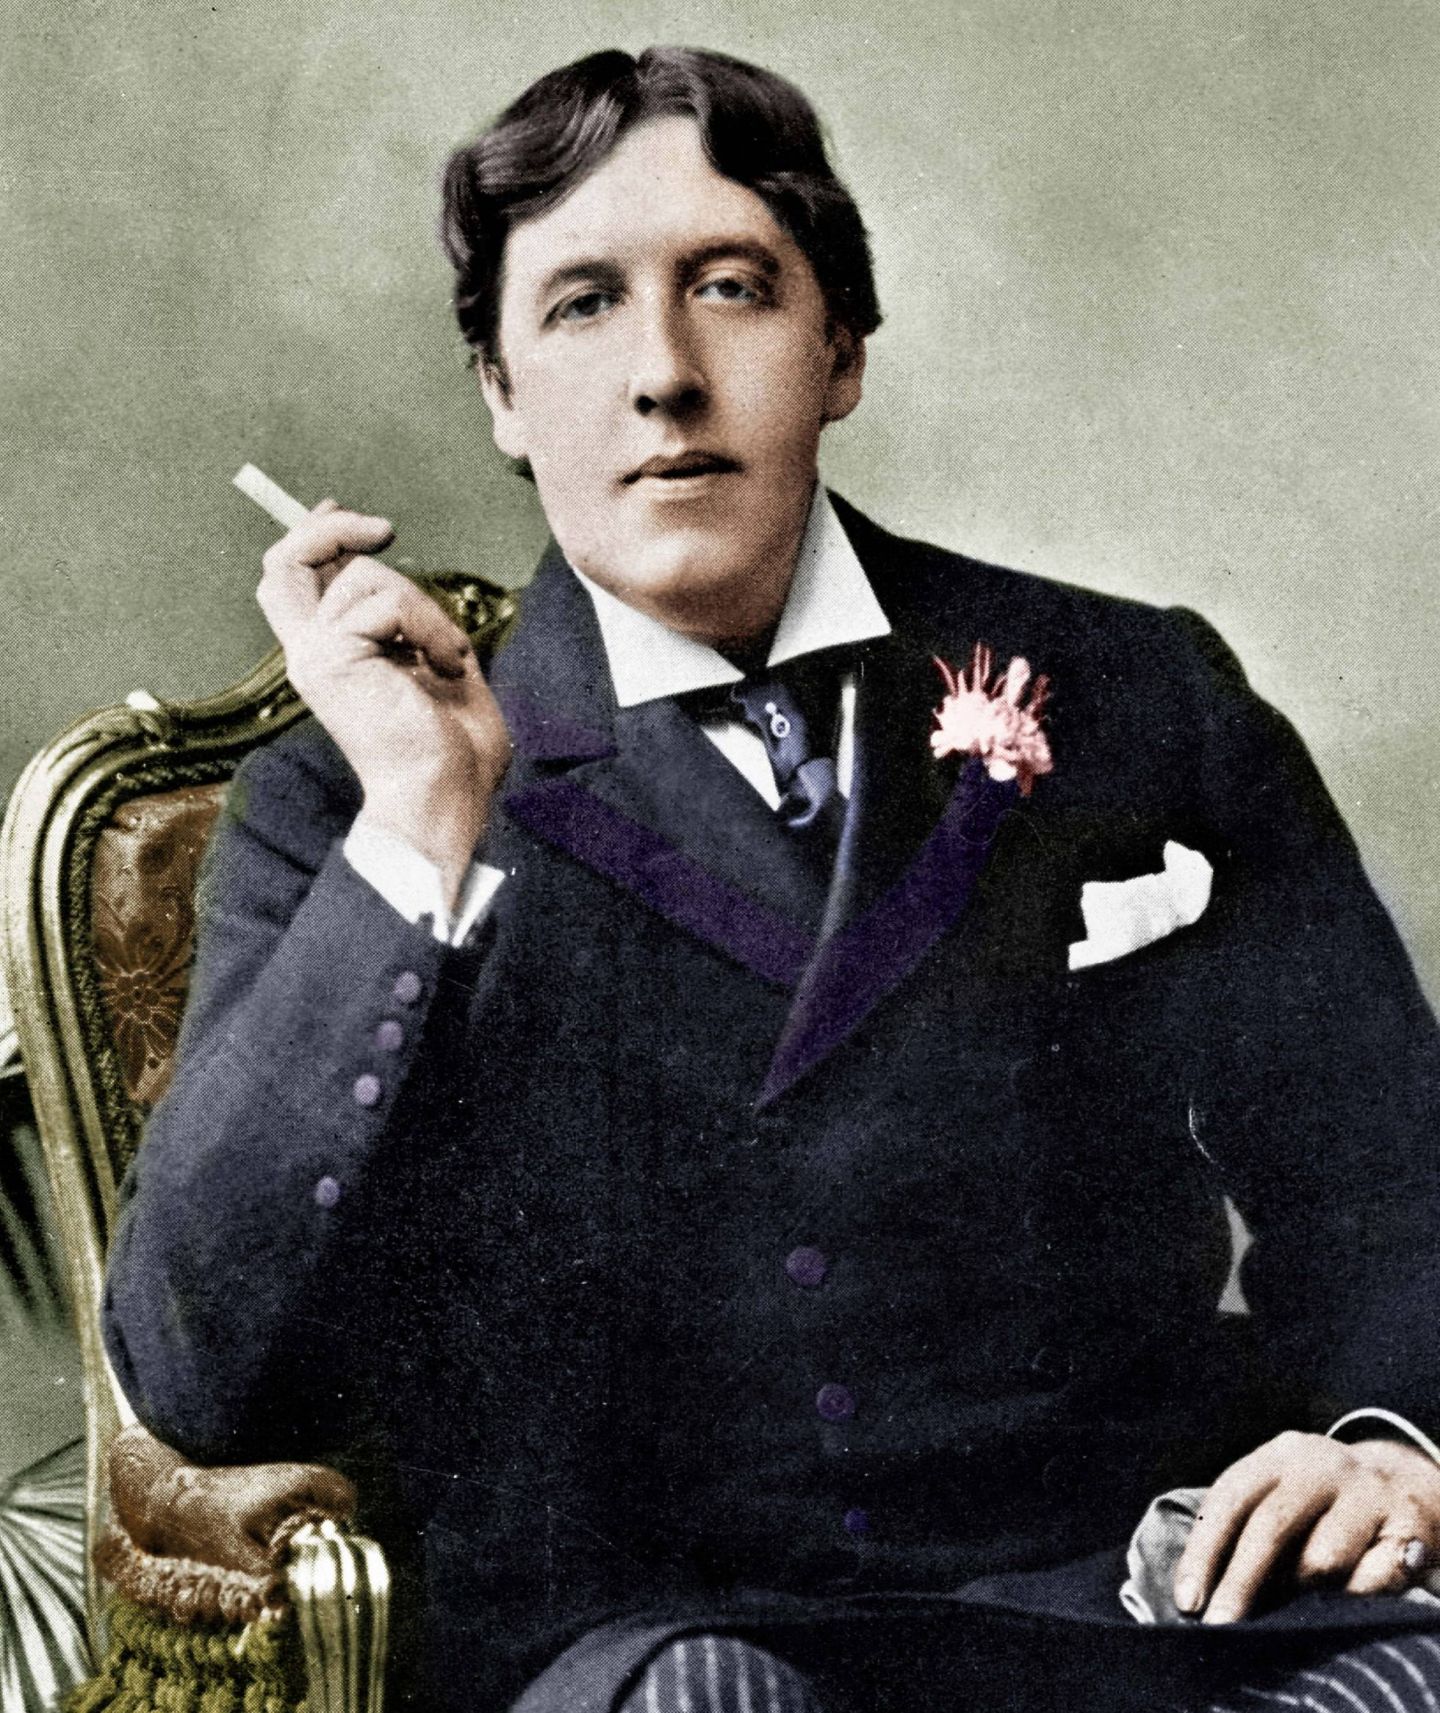 33 frases de Oscar Wilde que siguen sonando rabiosamente modernas 165 años después